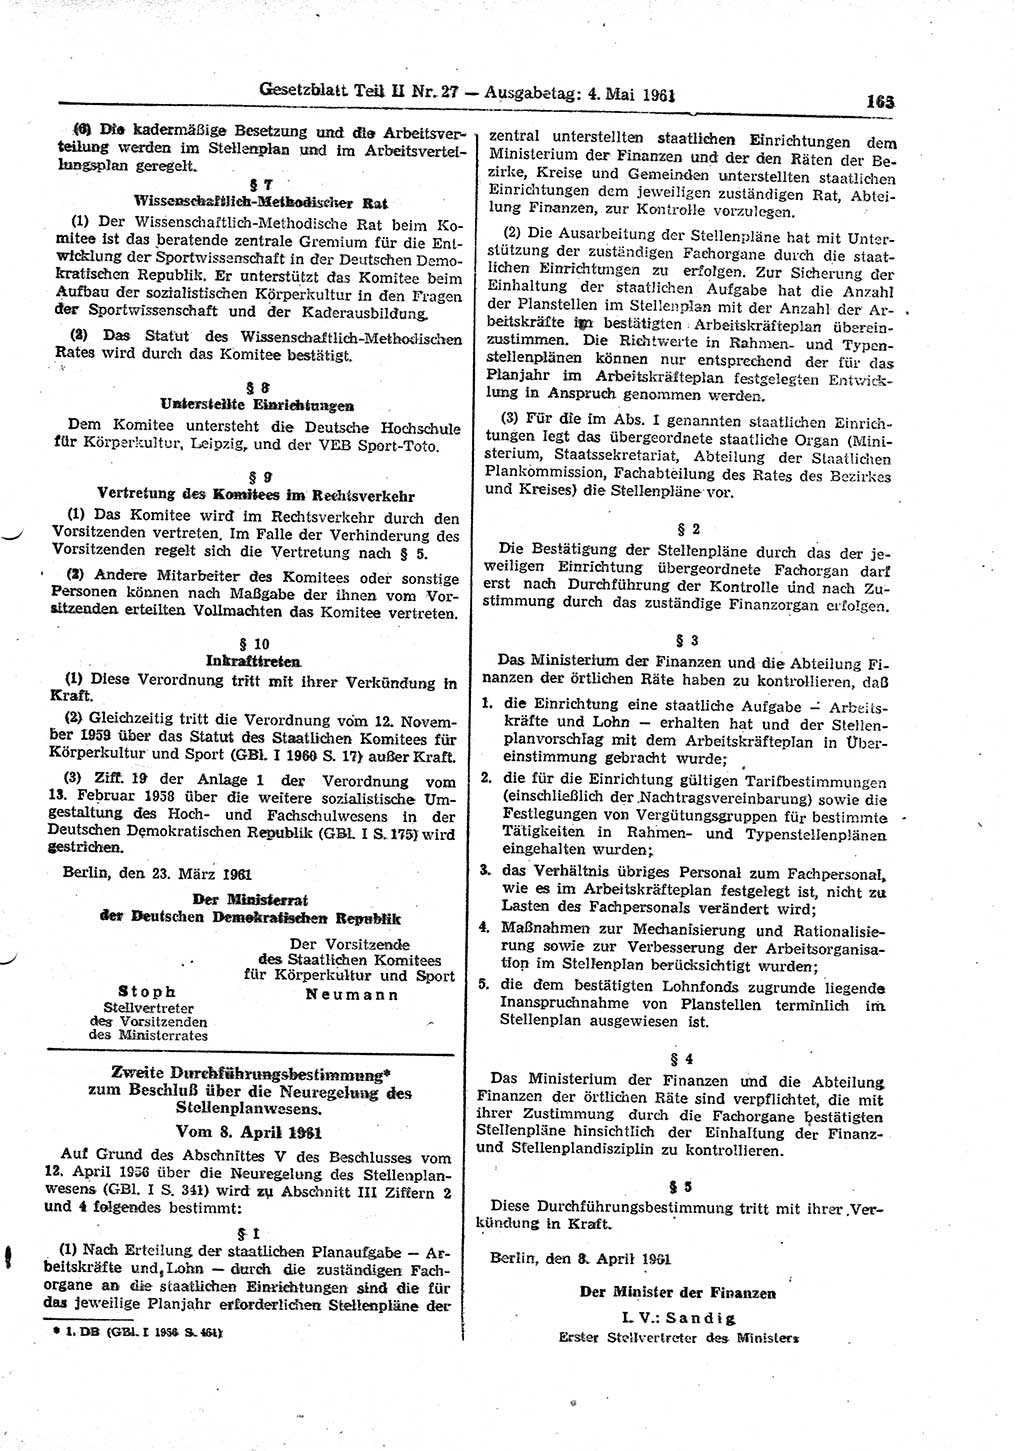 Gesetzblatt (GBl.) der Deutschen Demokratischen Republik (DDR) Teil ⅠⅠ 1961, Seite 165 (GBl. DDR ⅠⅠ 1961, S. 165)